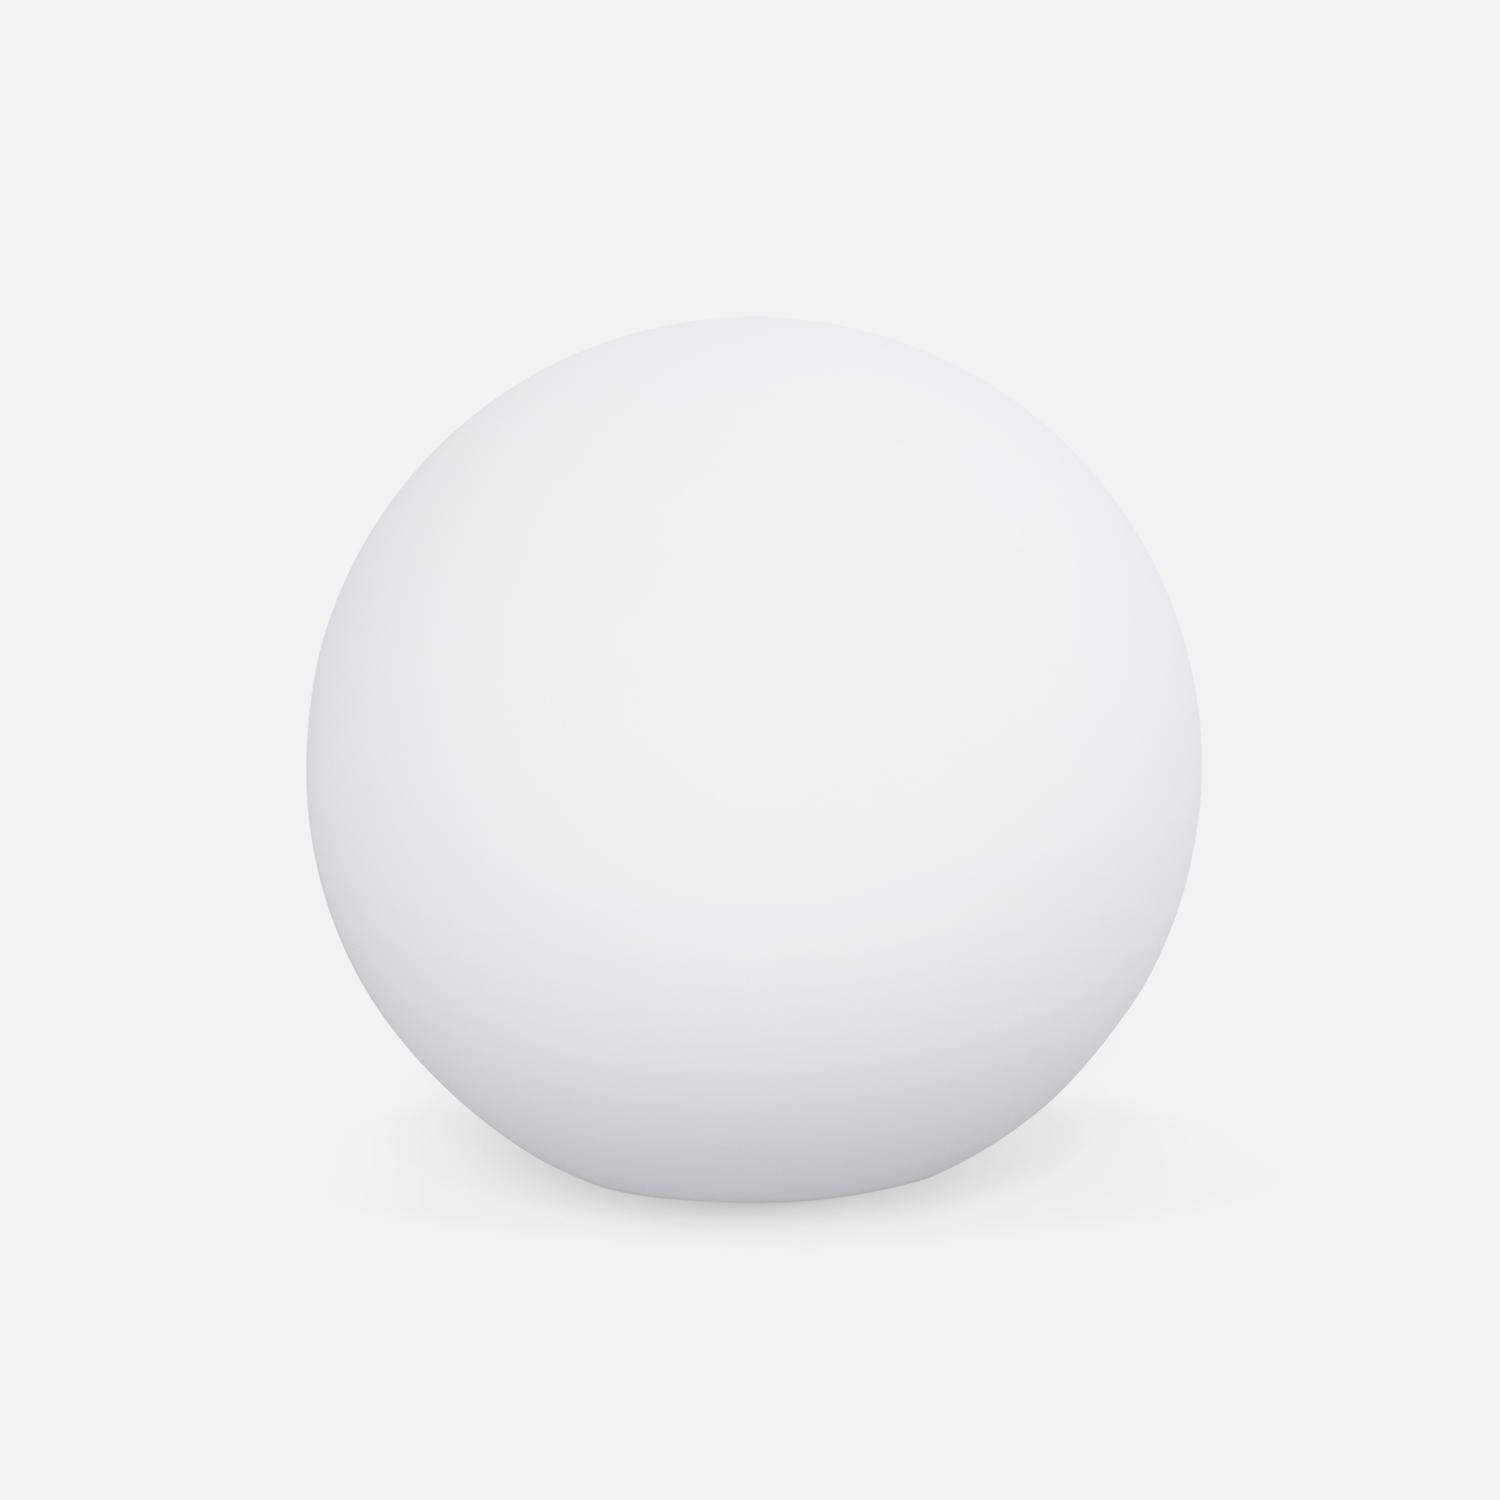 LED Bollamp 50cm – Decoratieve lichtbol, Ø50cm, warm wit, afstandsbediening Photo2